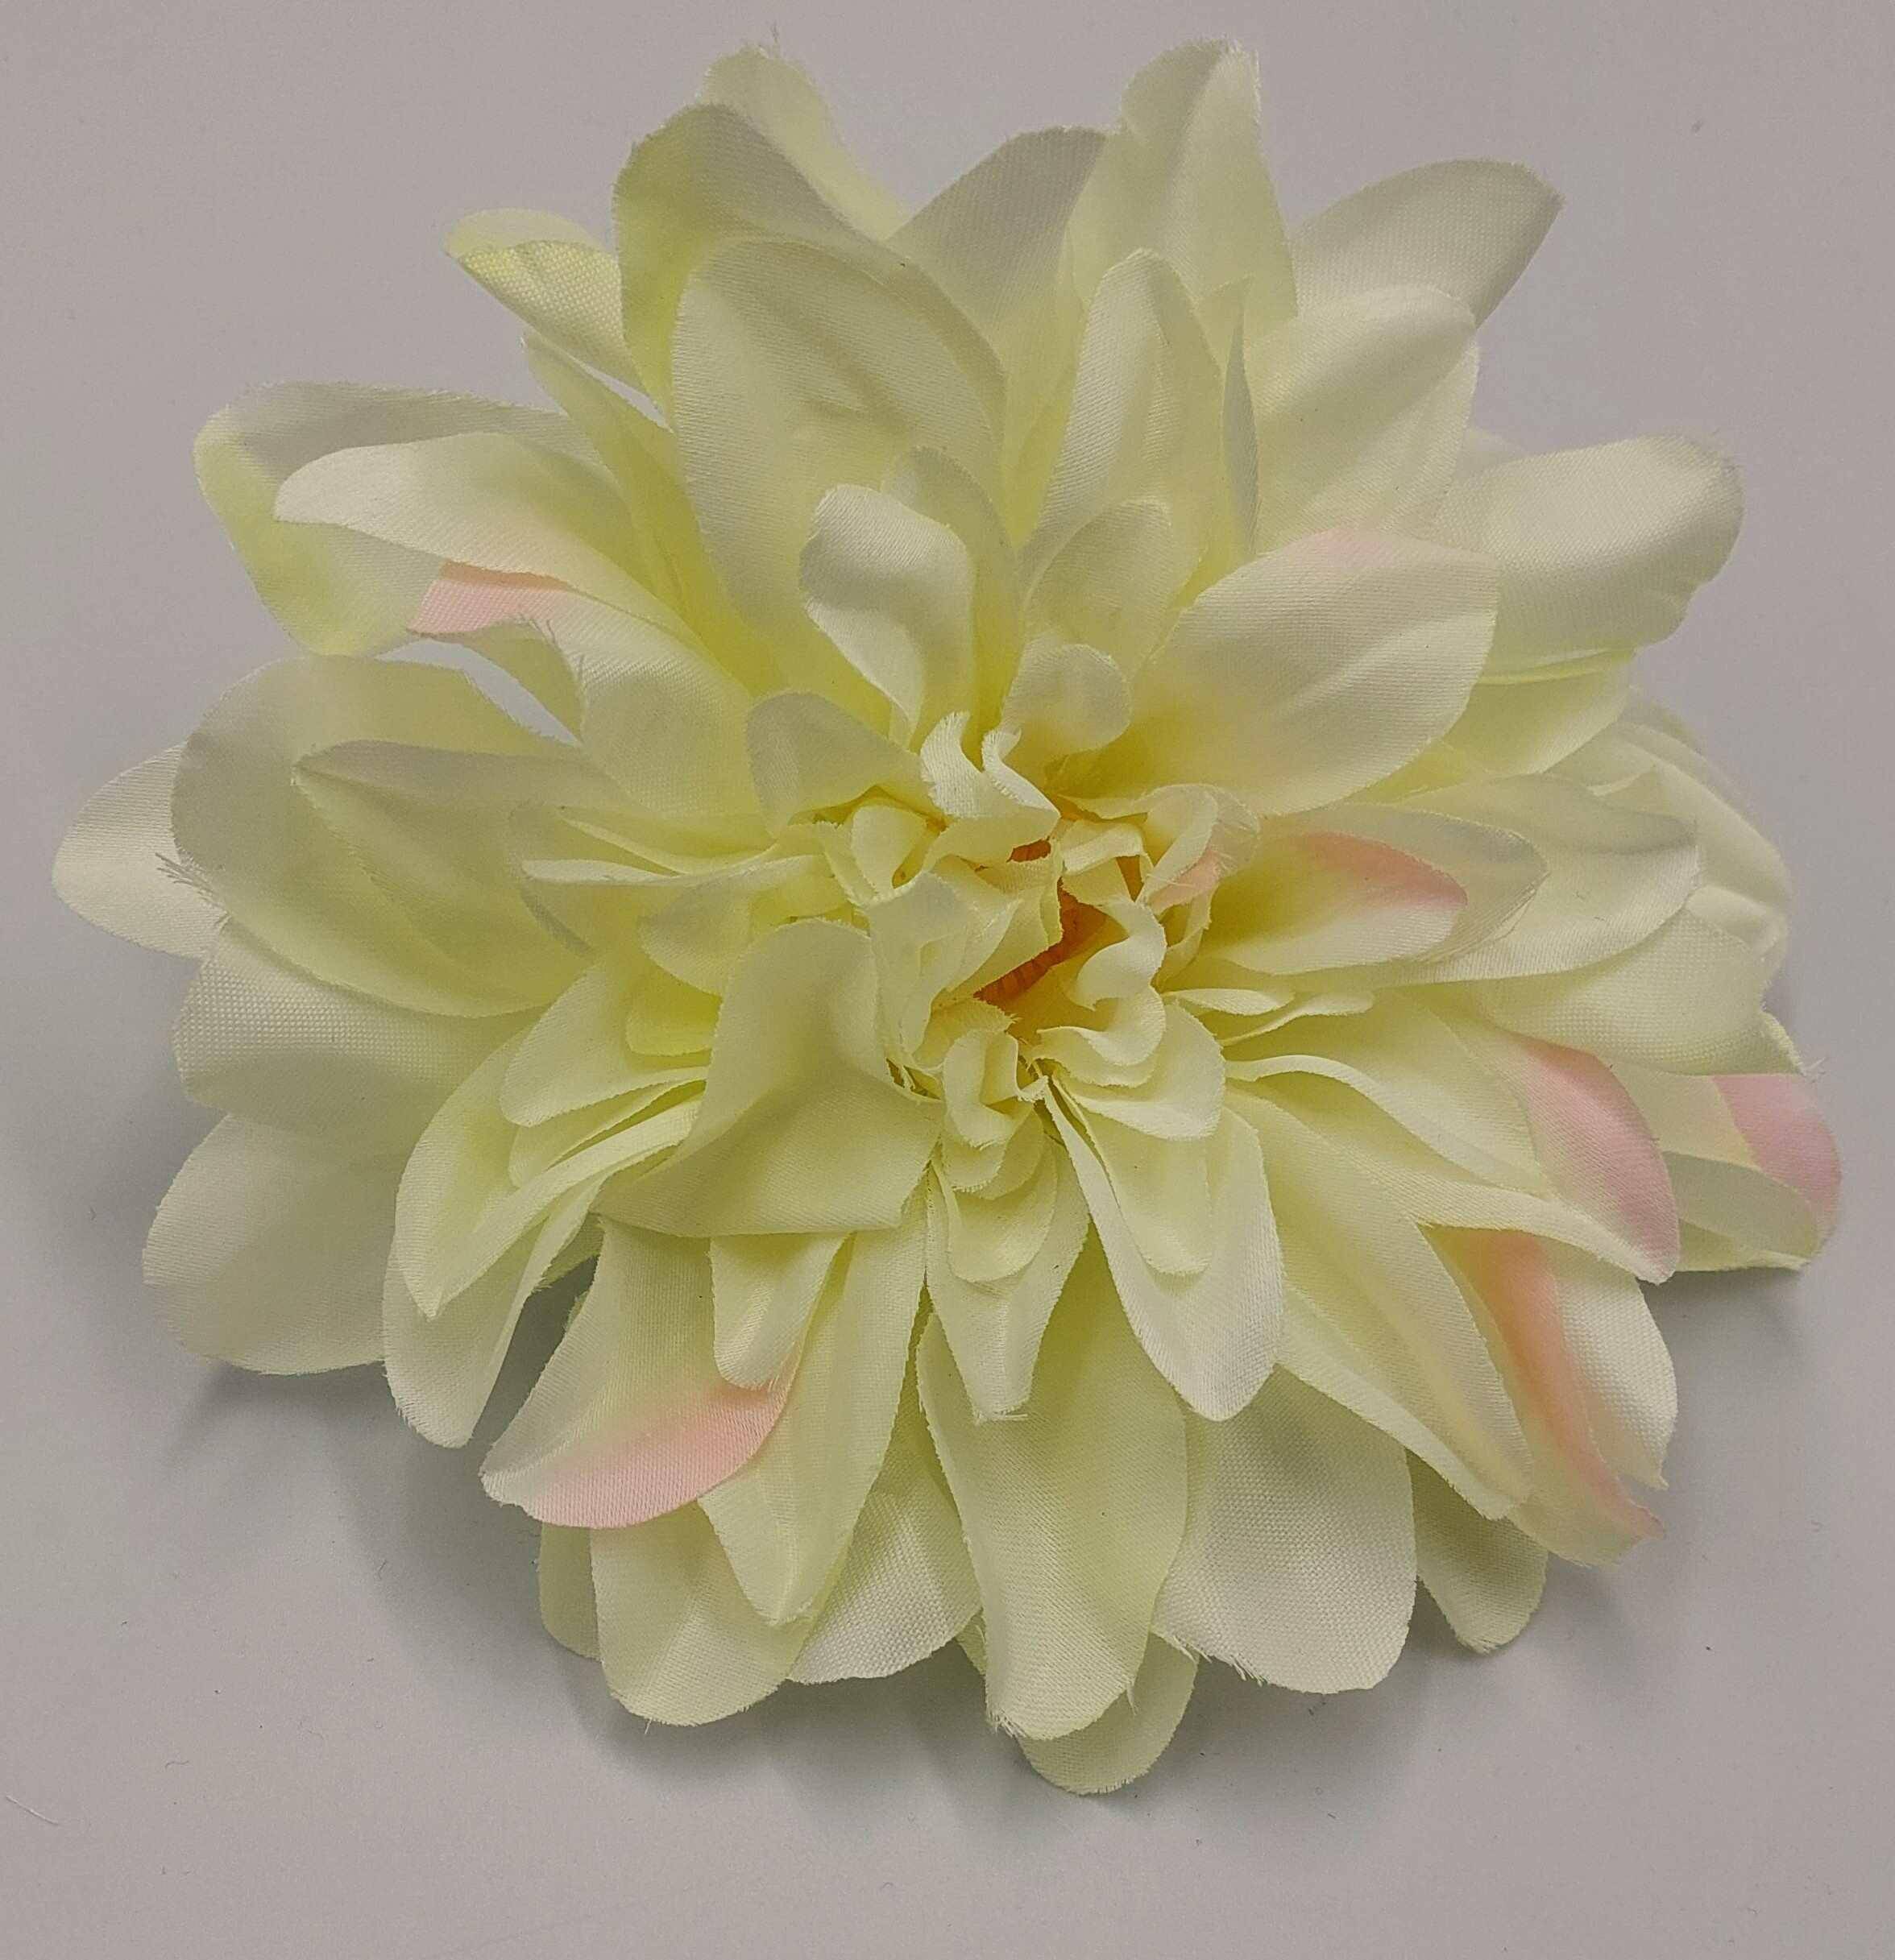 Kwiat Wyrobowy Dalia W149-22 Cream/Pink